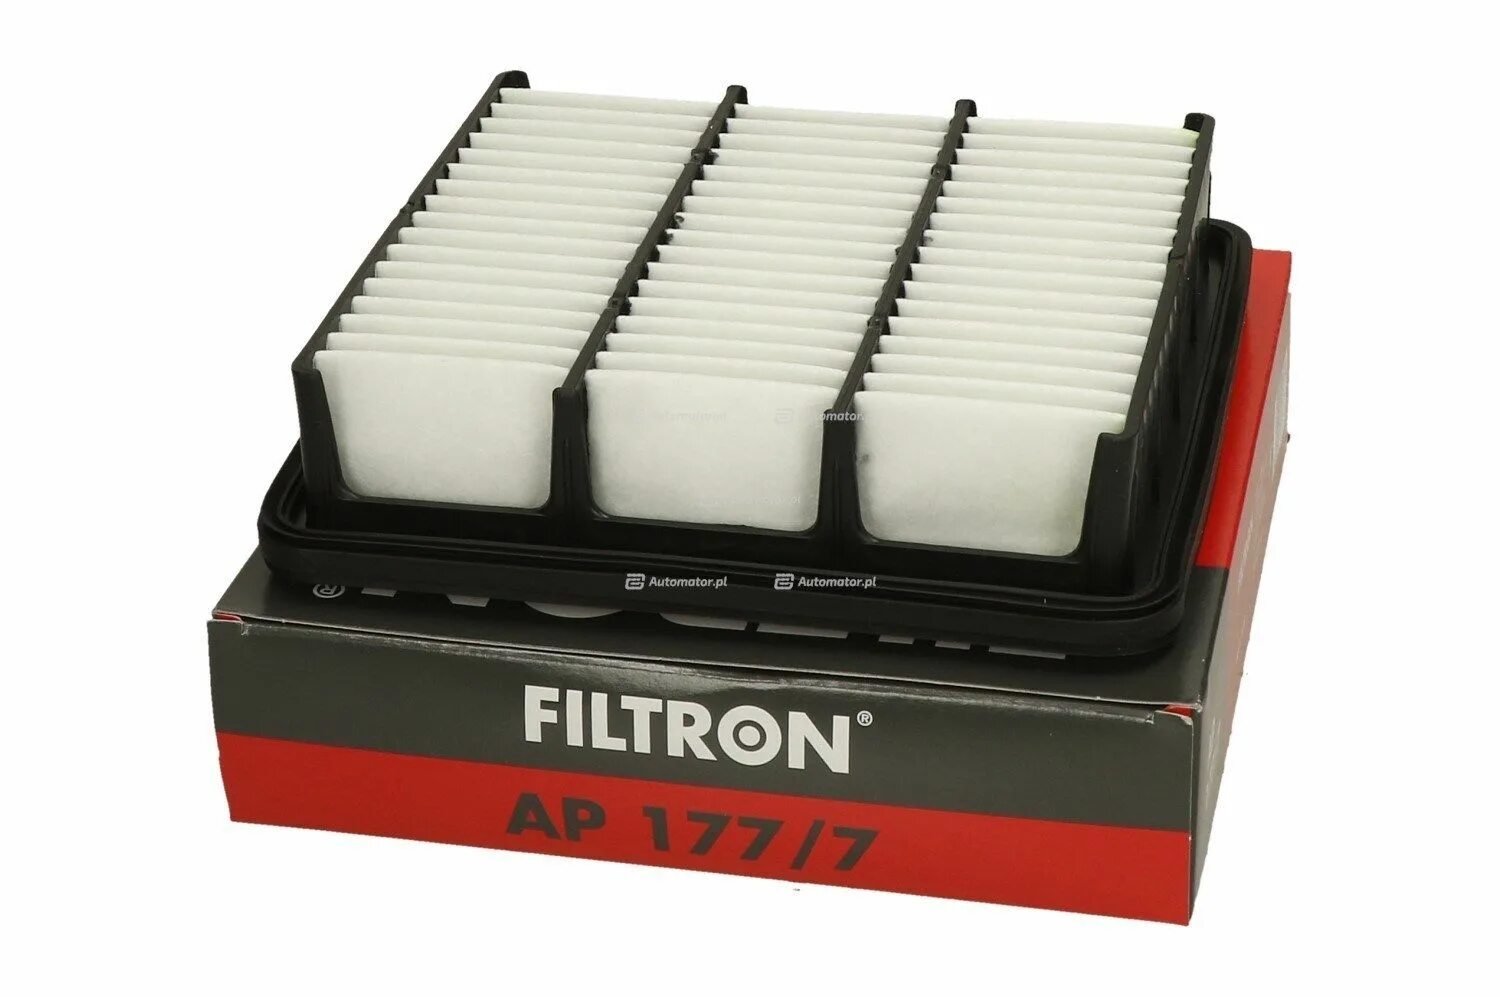 FILTRON ap122/9 фильтр воздушный. Воздушный фильтр Kia Ceed. Фильтр воздушный Киа СИД 2008. Фильтр Киа СИД 1.6 2008 фильтр воздушный. Фильтр киа сид 1.6